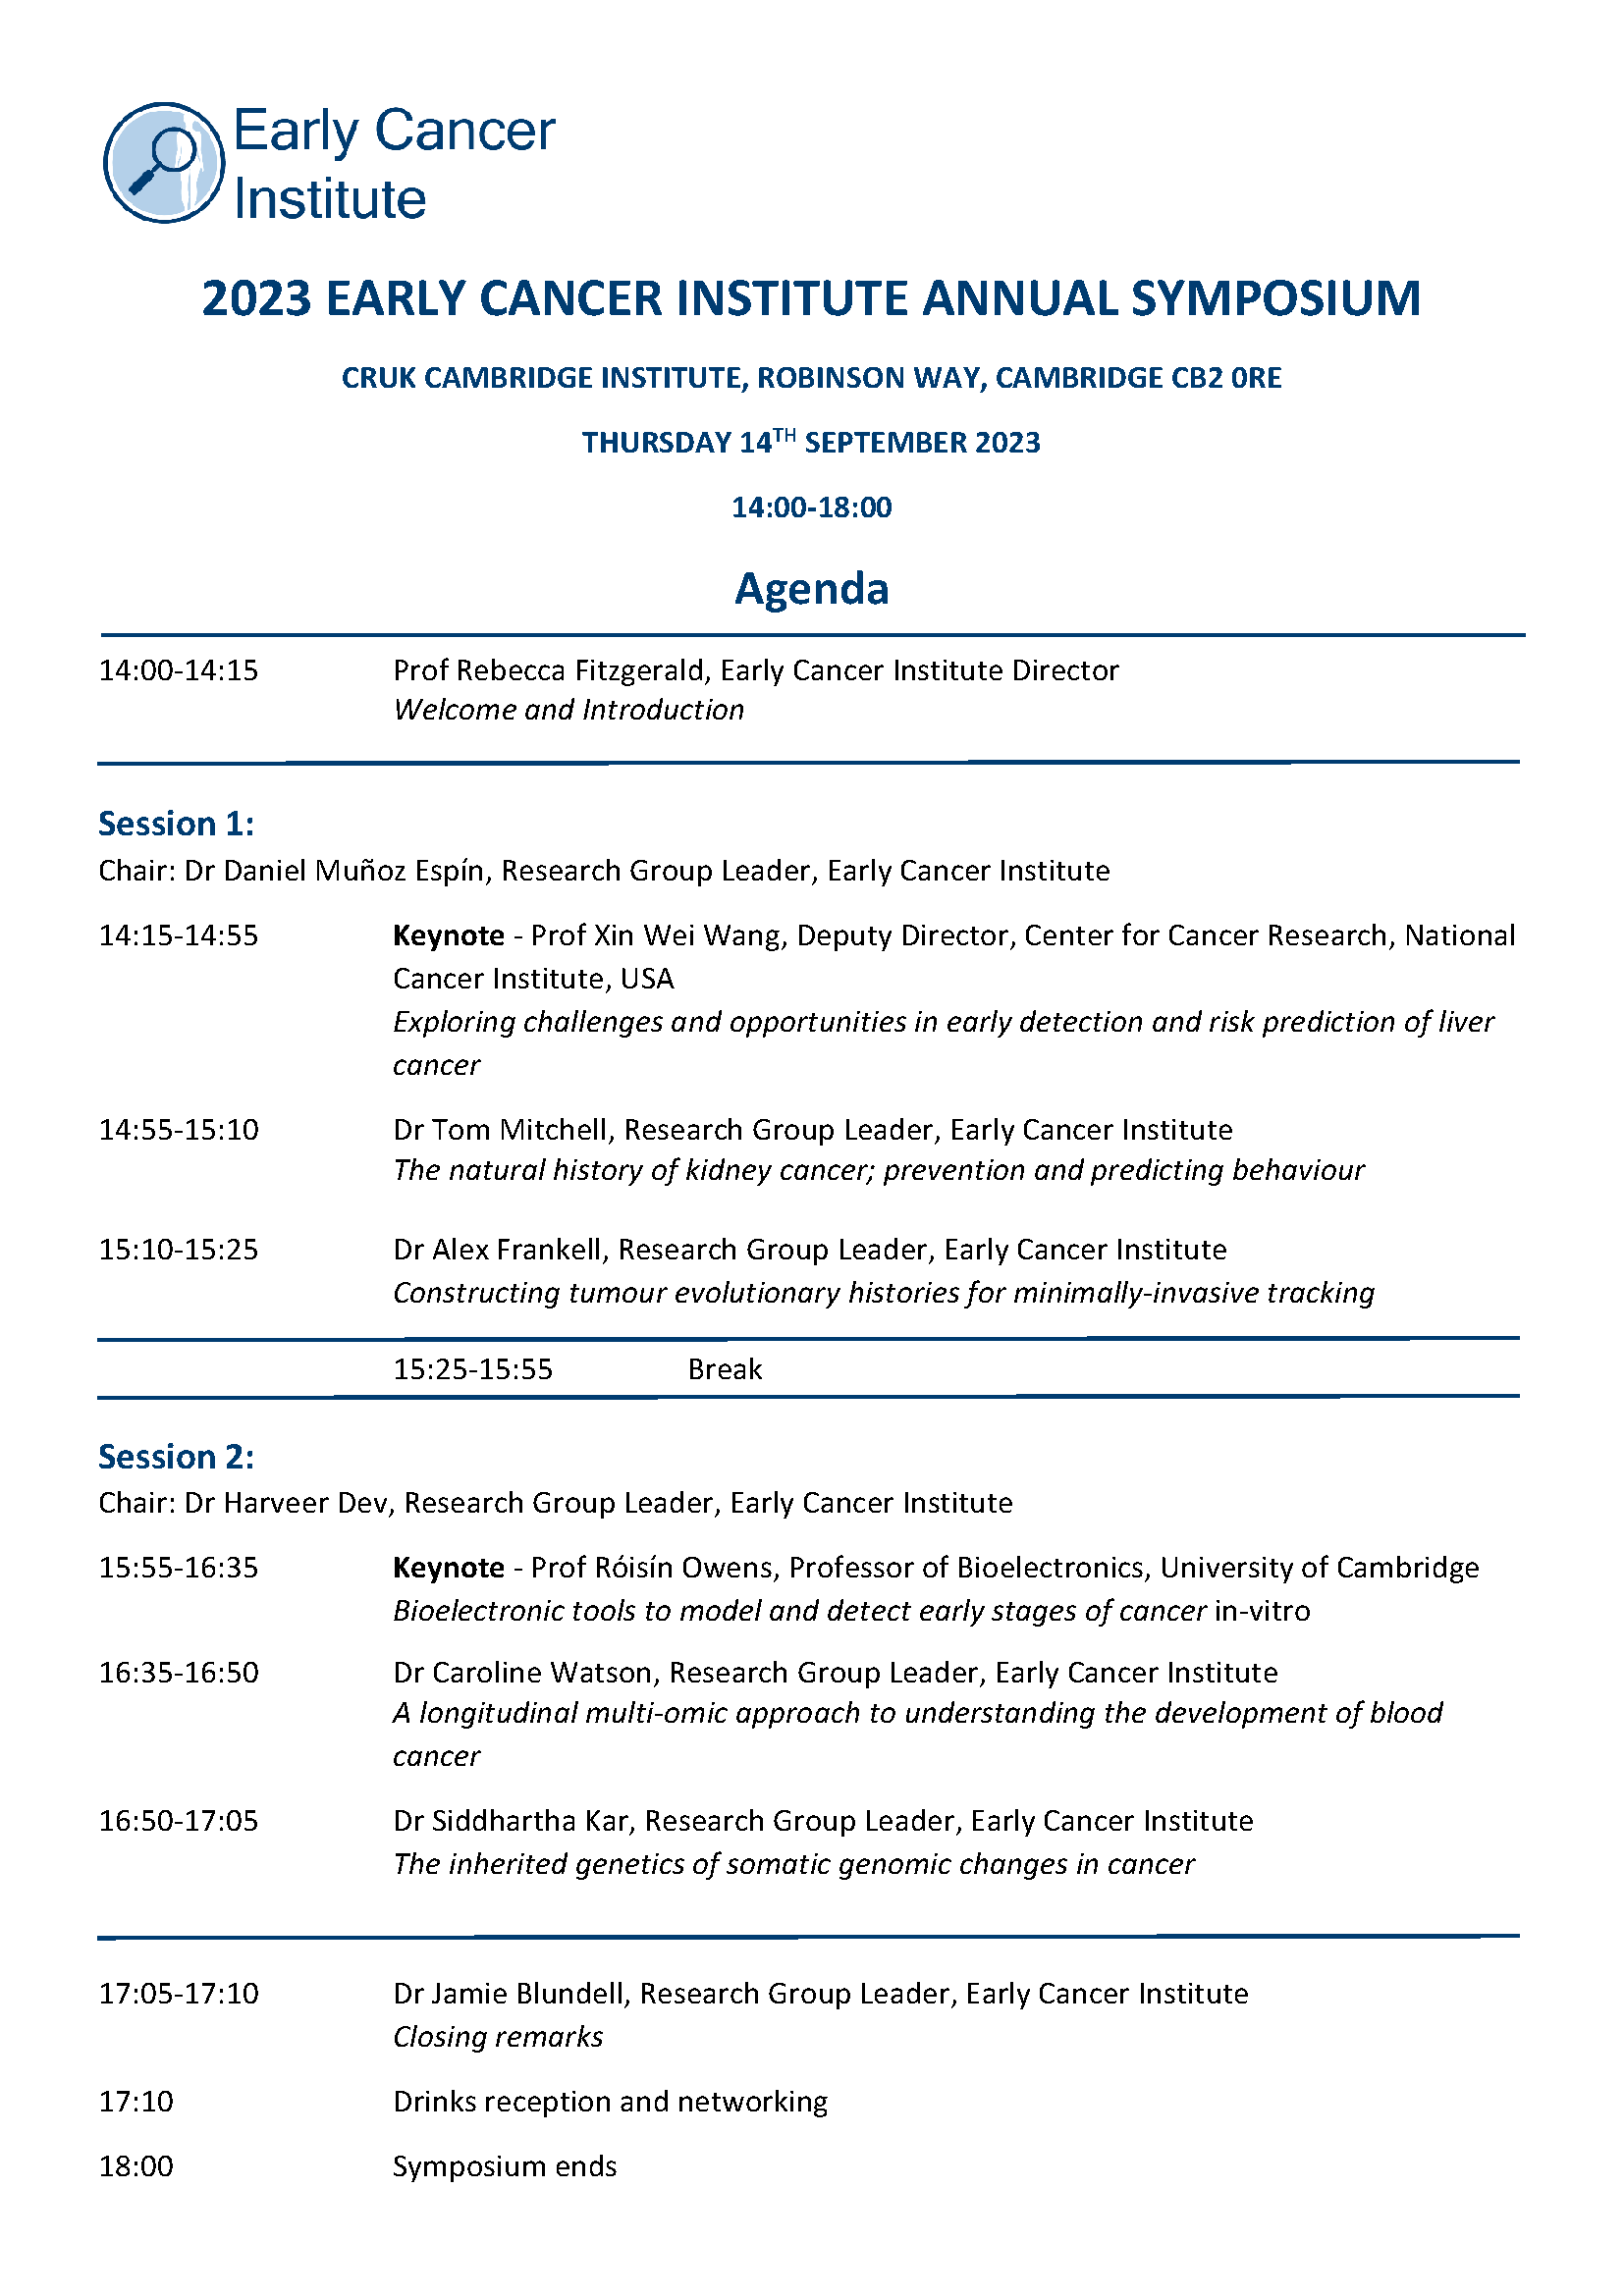 Annual Symposium 2023 agenda